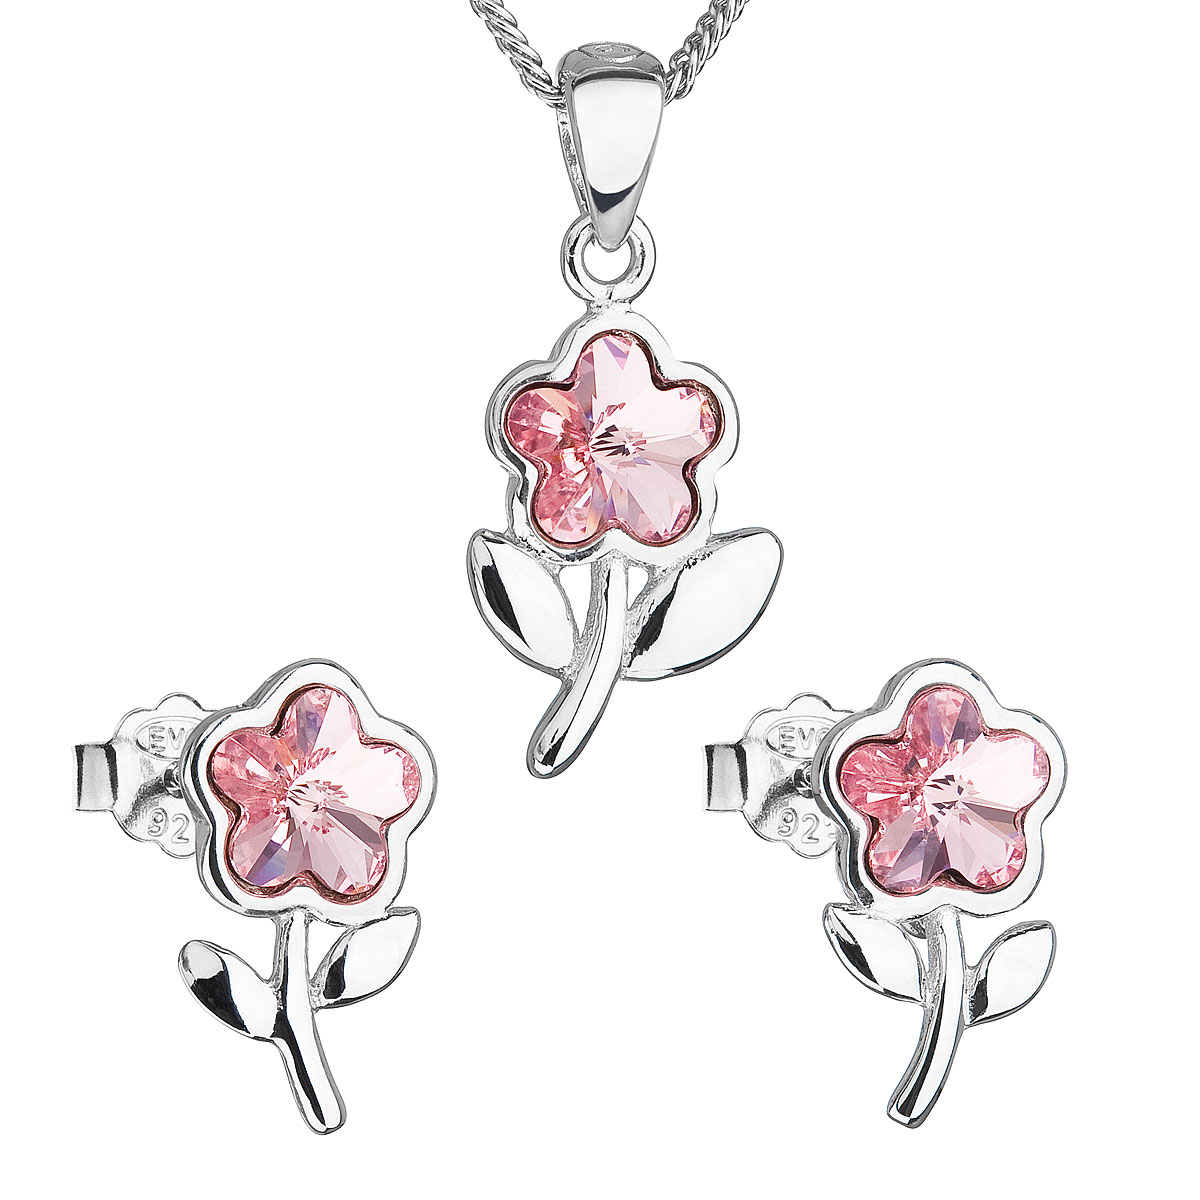 Evolution Group Sada šperků s krystaly Swarovski náušnice,řetízek a přívěsek růžová kytička 39172.3 light rose